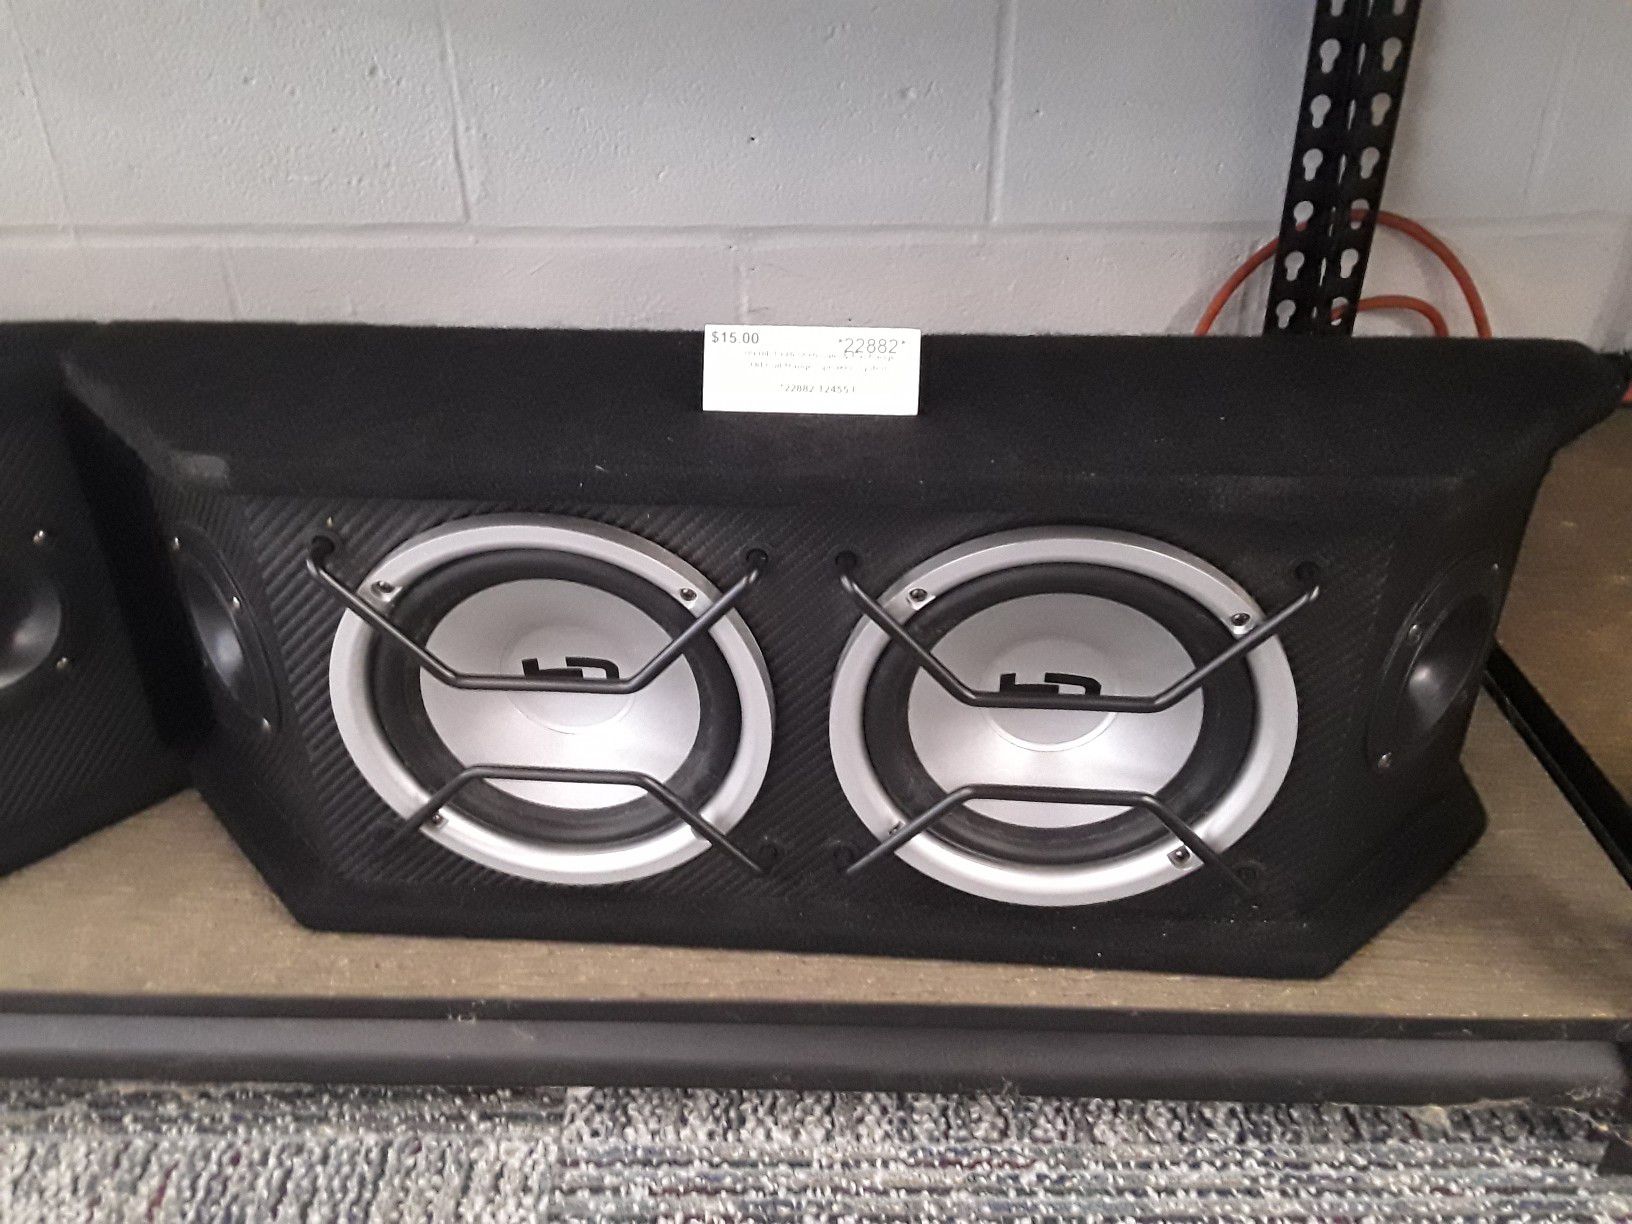 HD full range speakers